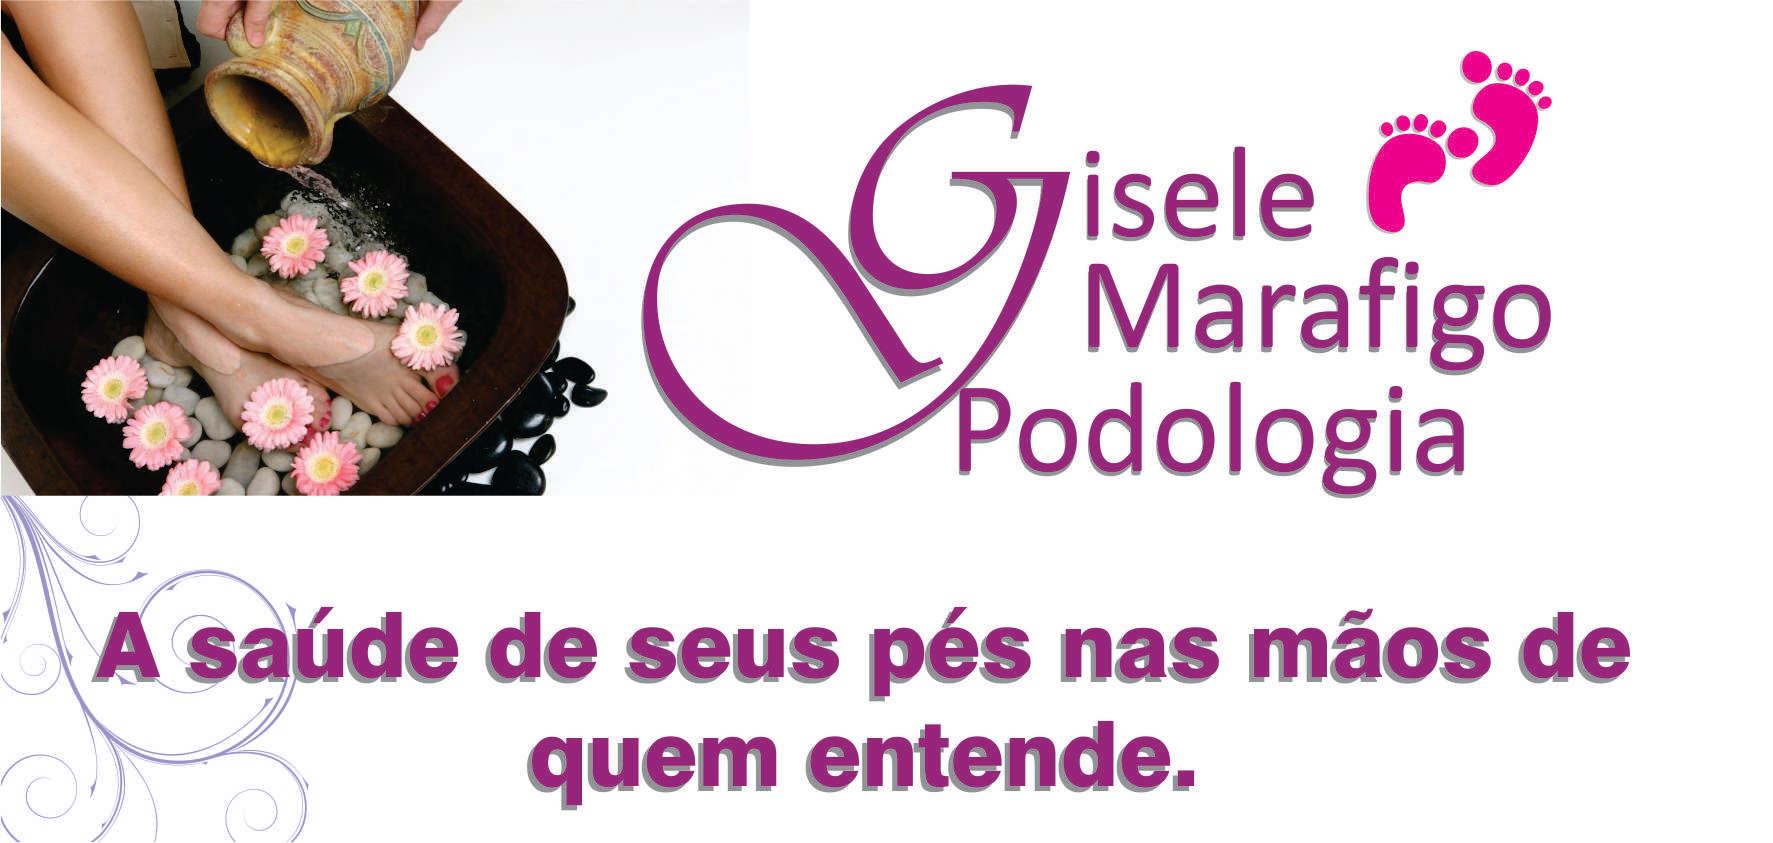 CLINICA MARAFIGO - Podólogos - São José dos Pinhais, PR